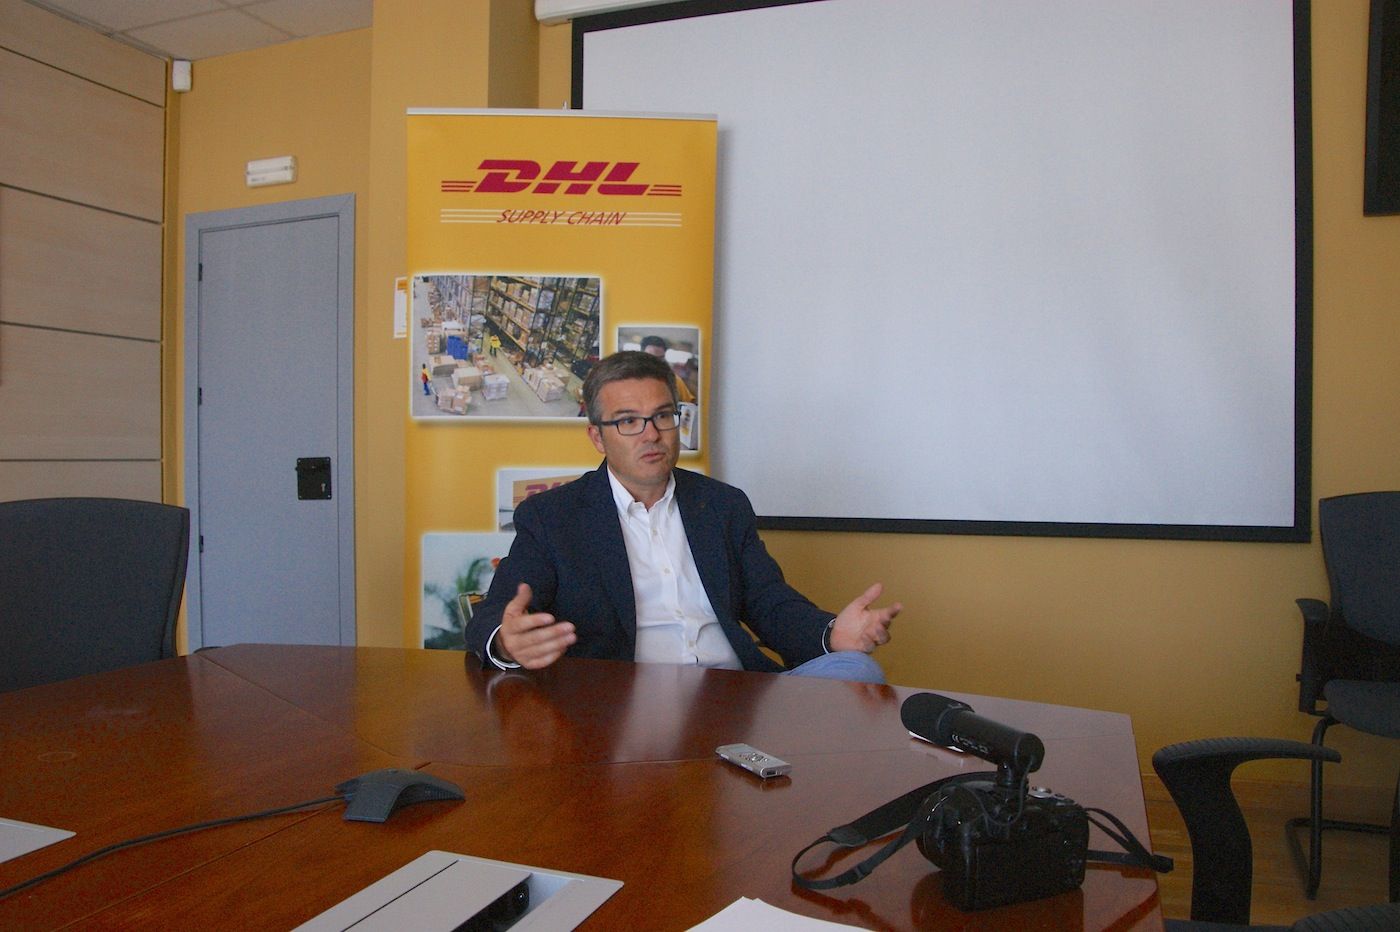 Francisco Milian director de la división de Farma y Tecnología de DHL SC